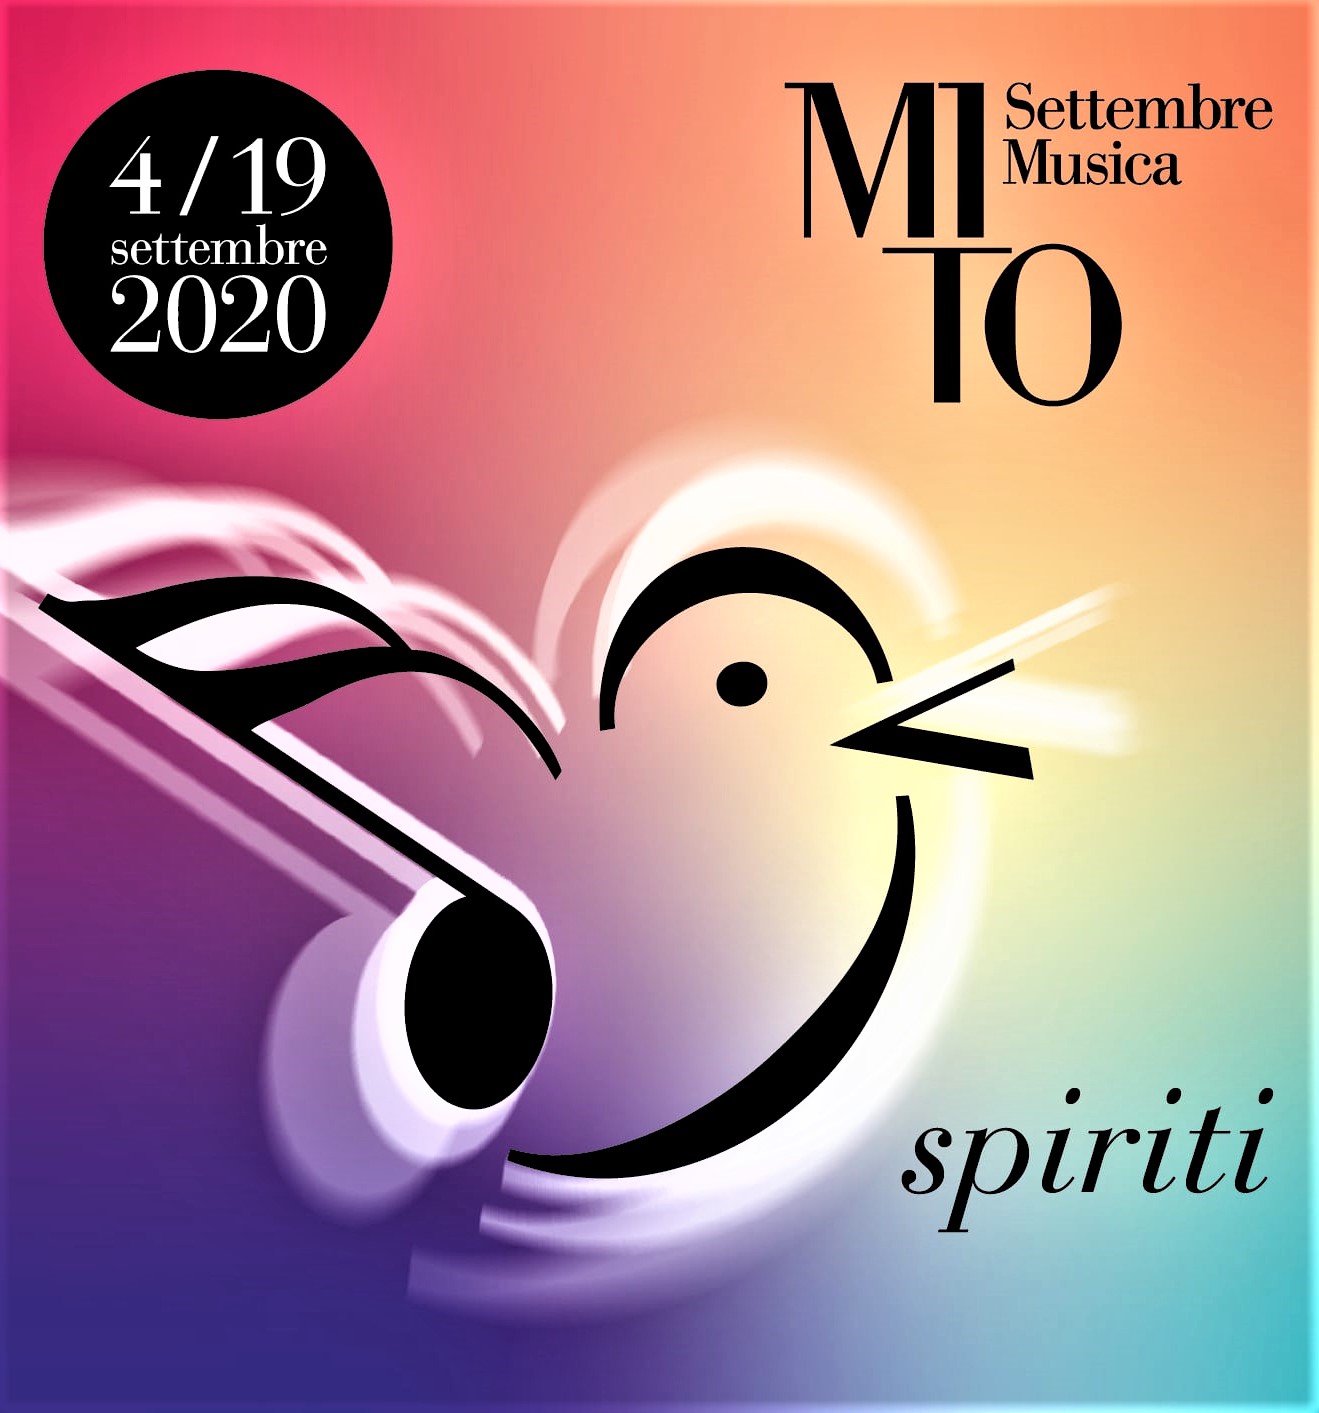 MITO Milano 06 - 10 settembre - Programma 11 Settembre 2020